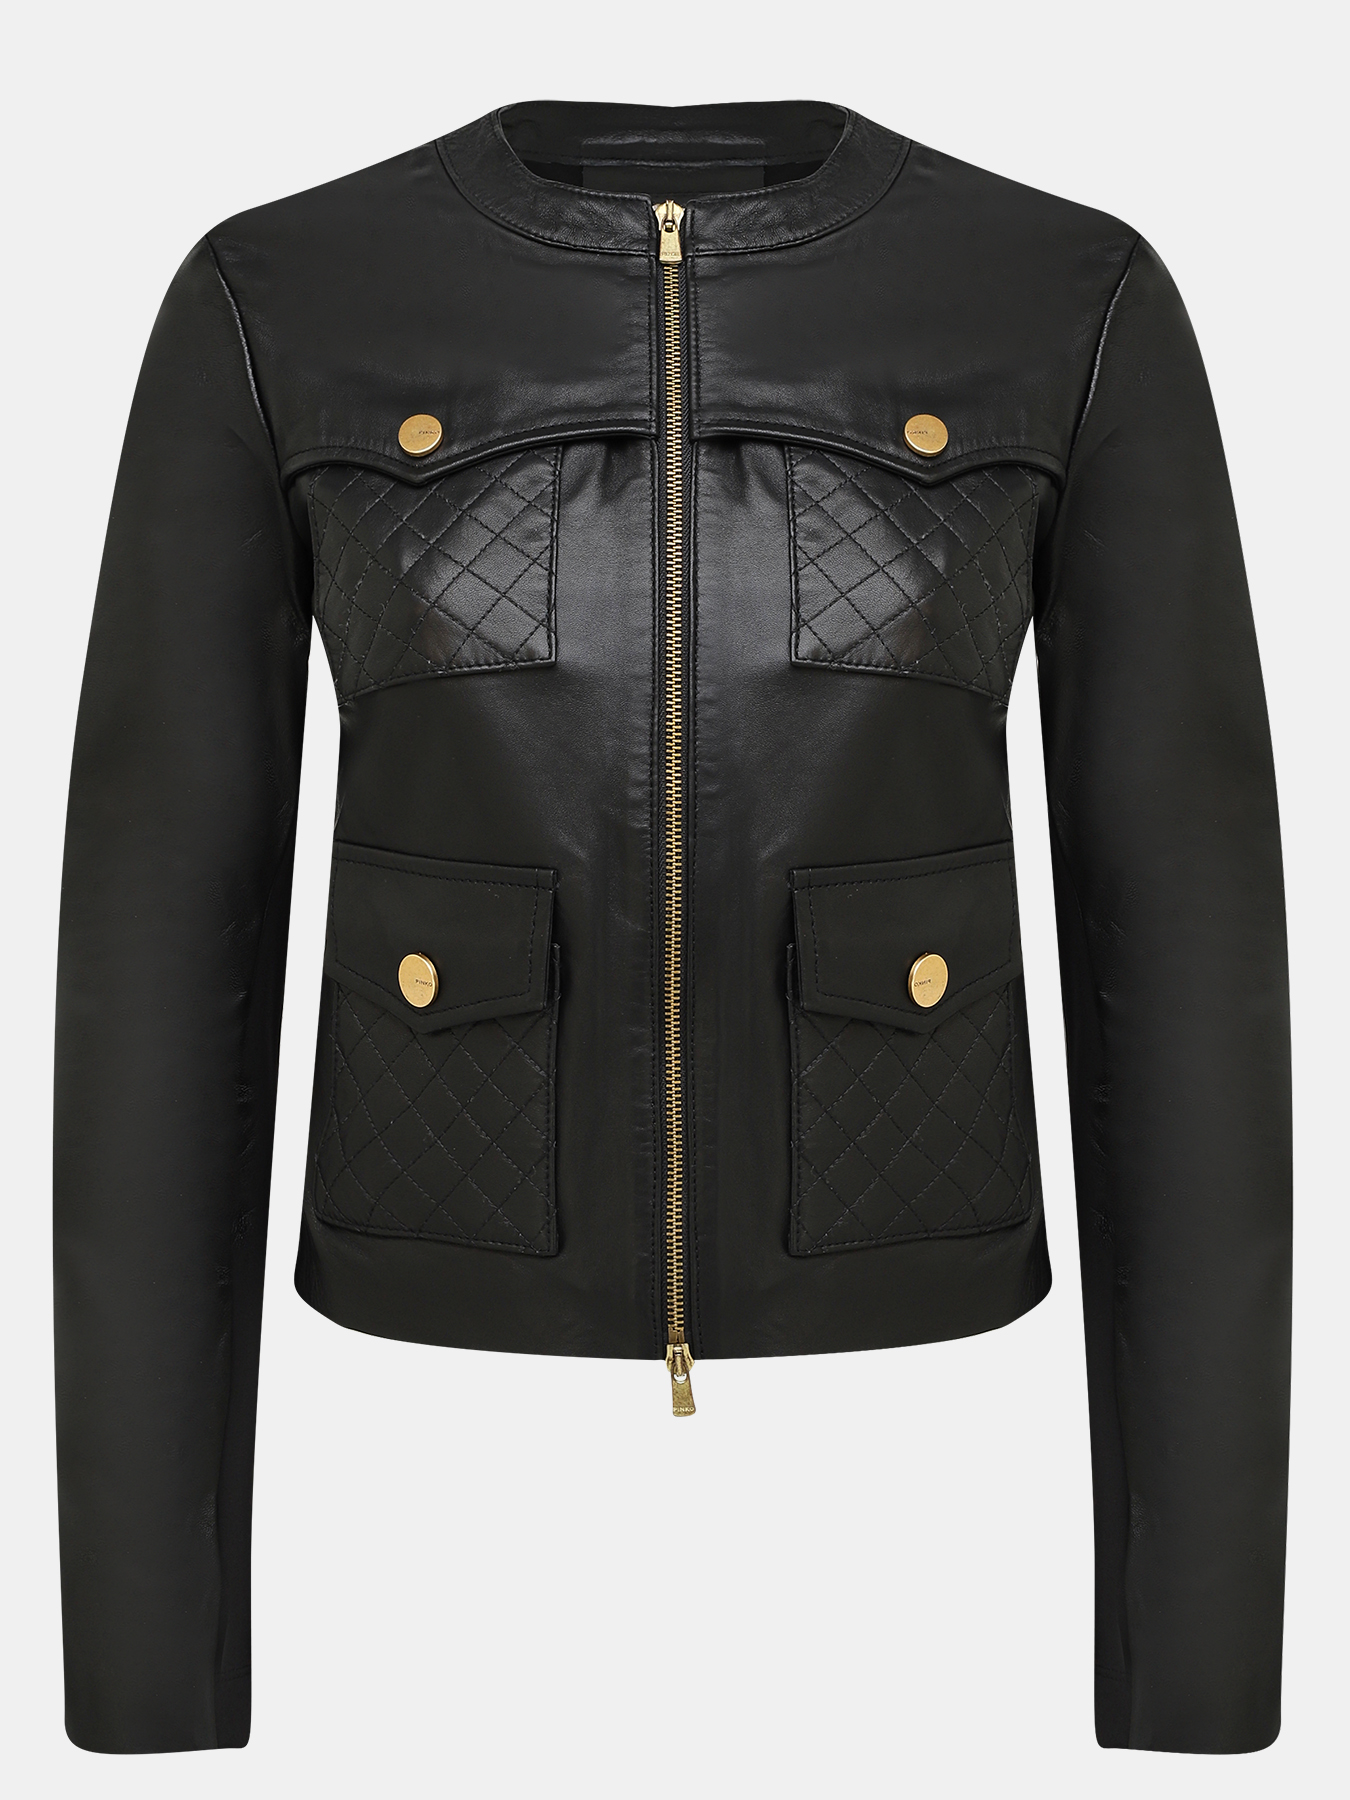 Кожаная куртка Pinko 384931-021, цвет черный, размер 42